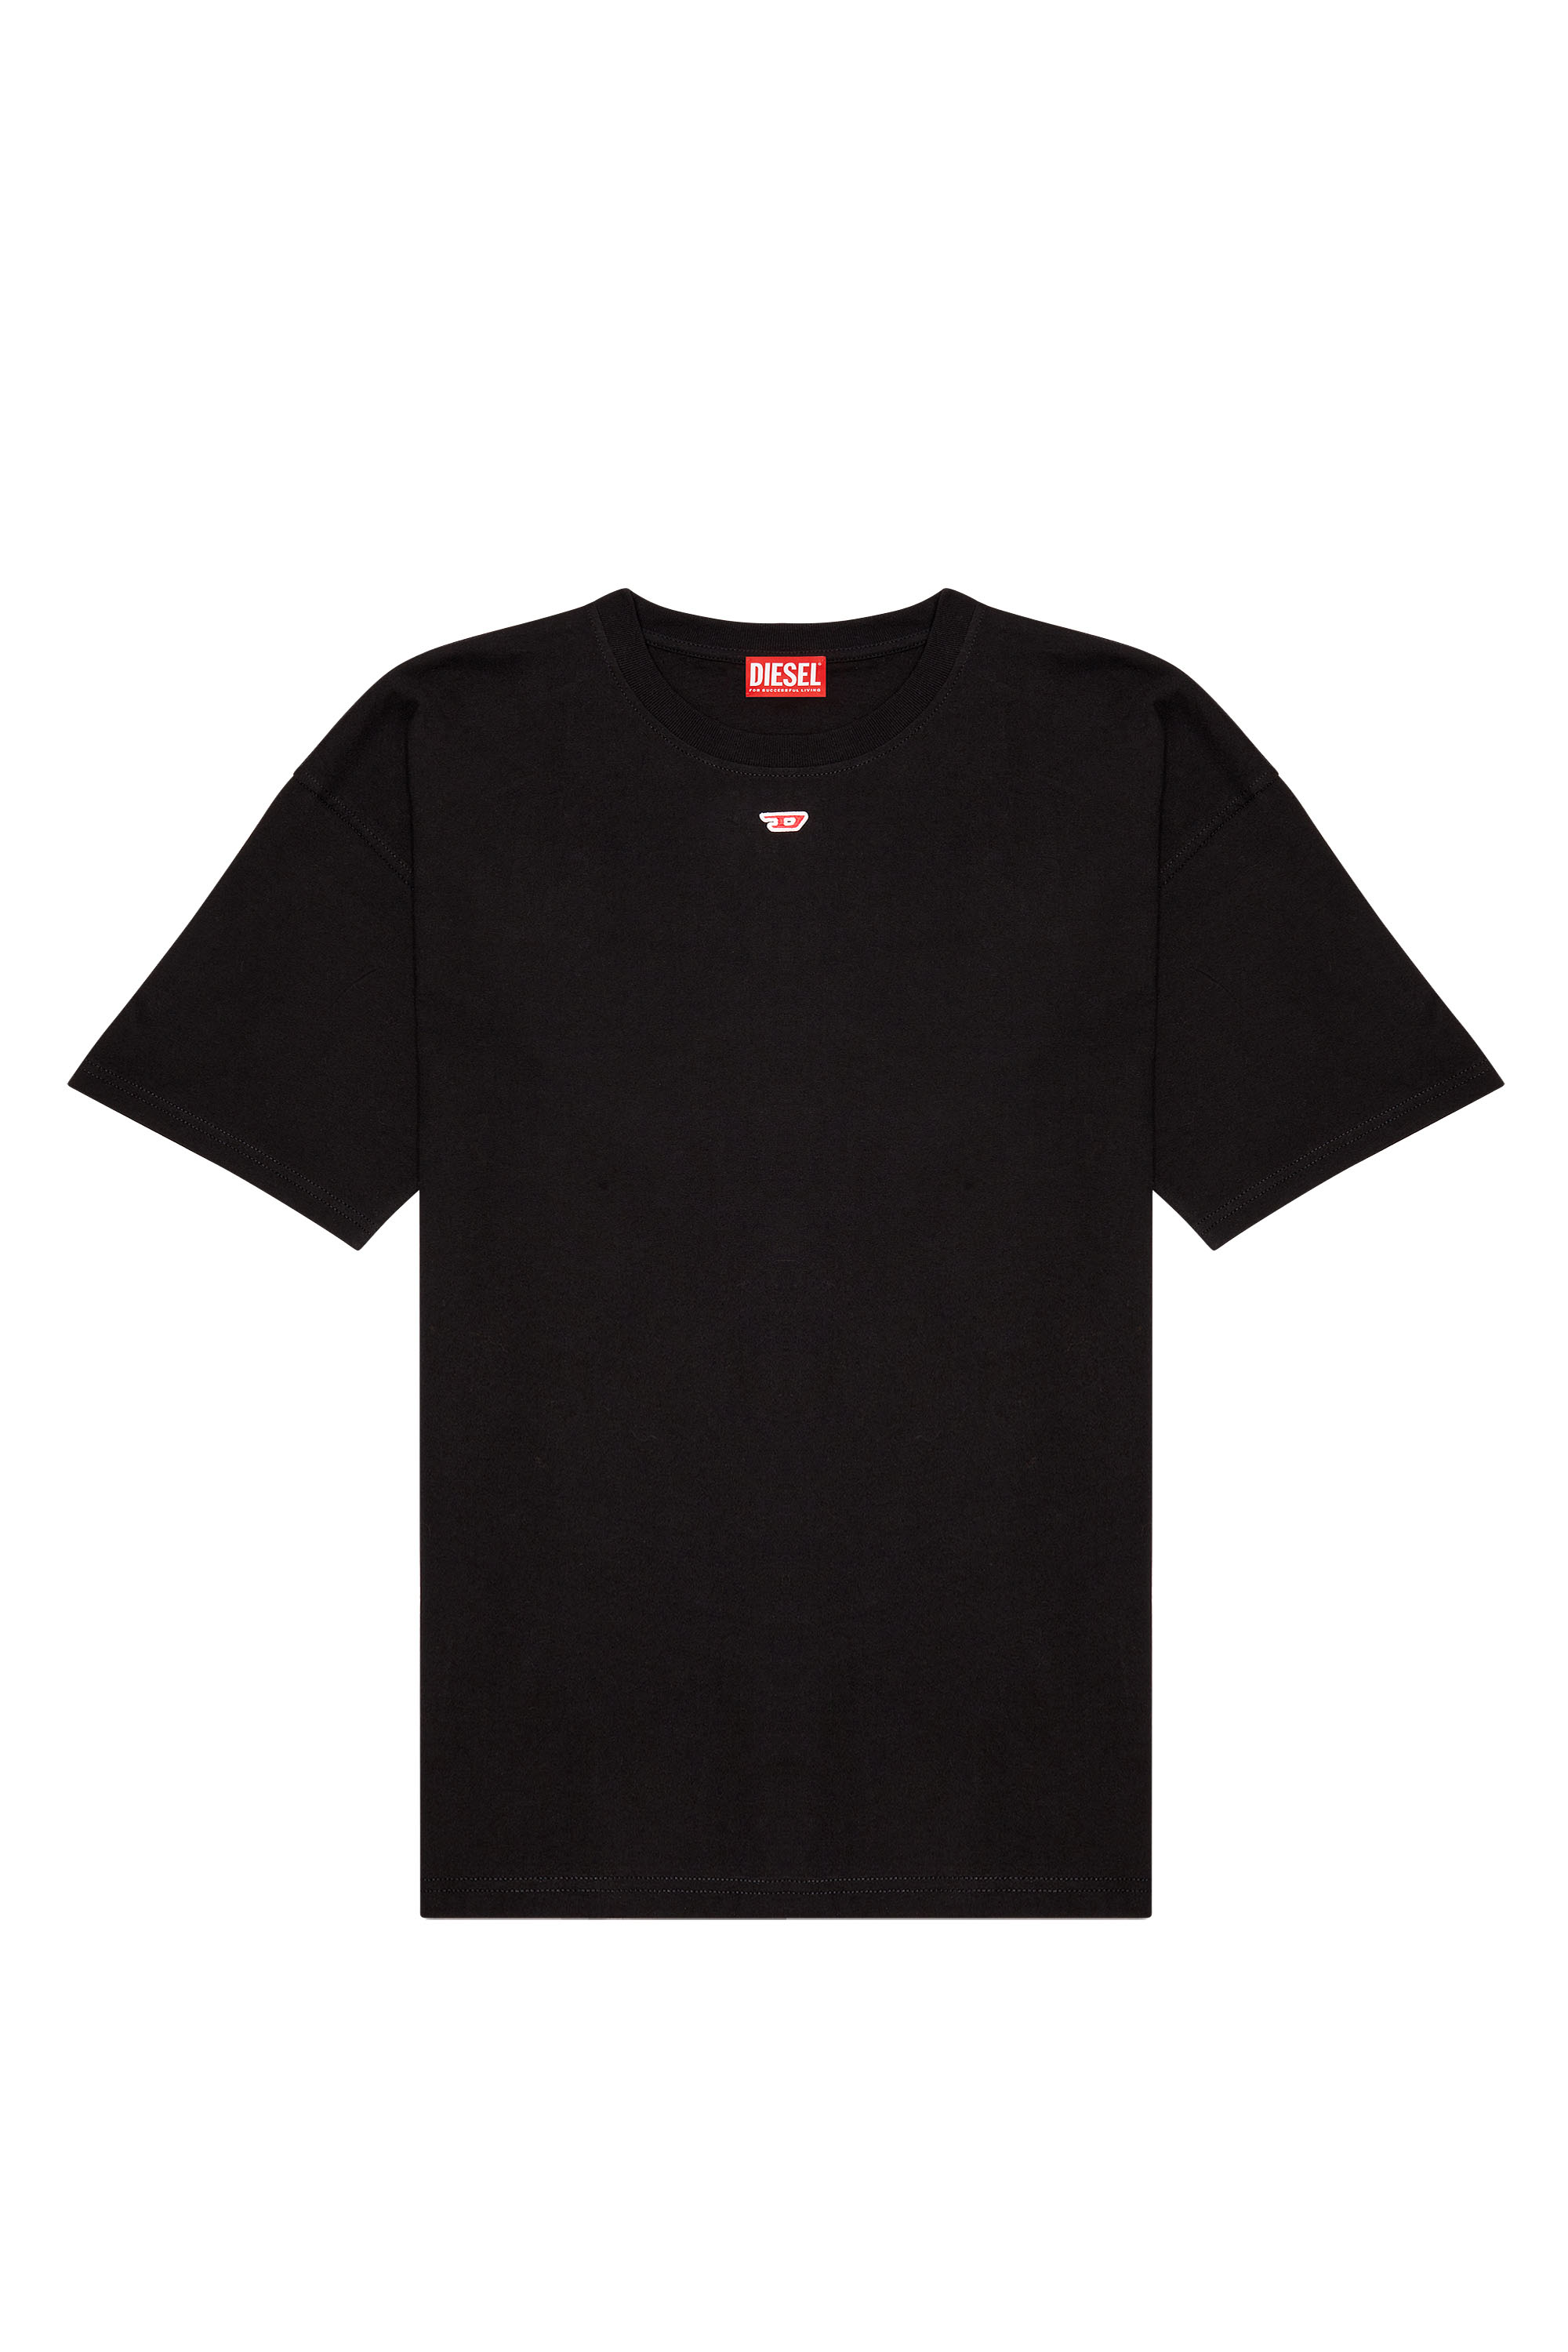 Diesel - T-BOXT-D, Mixte T-shirt avec empiècement D brodé in Noir - Image 6